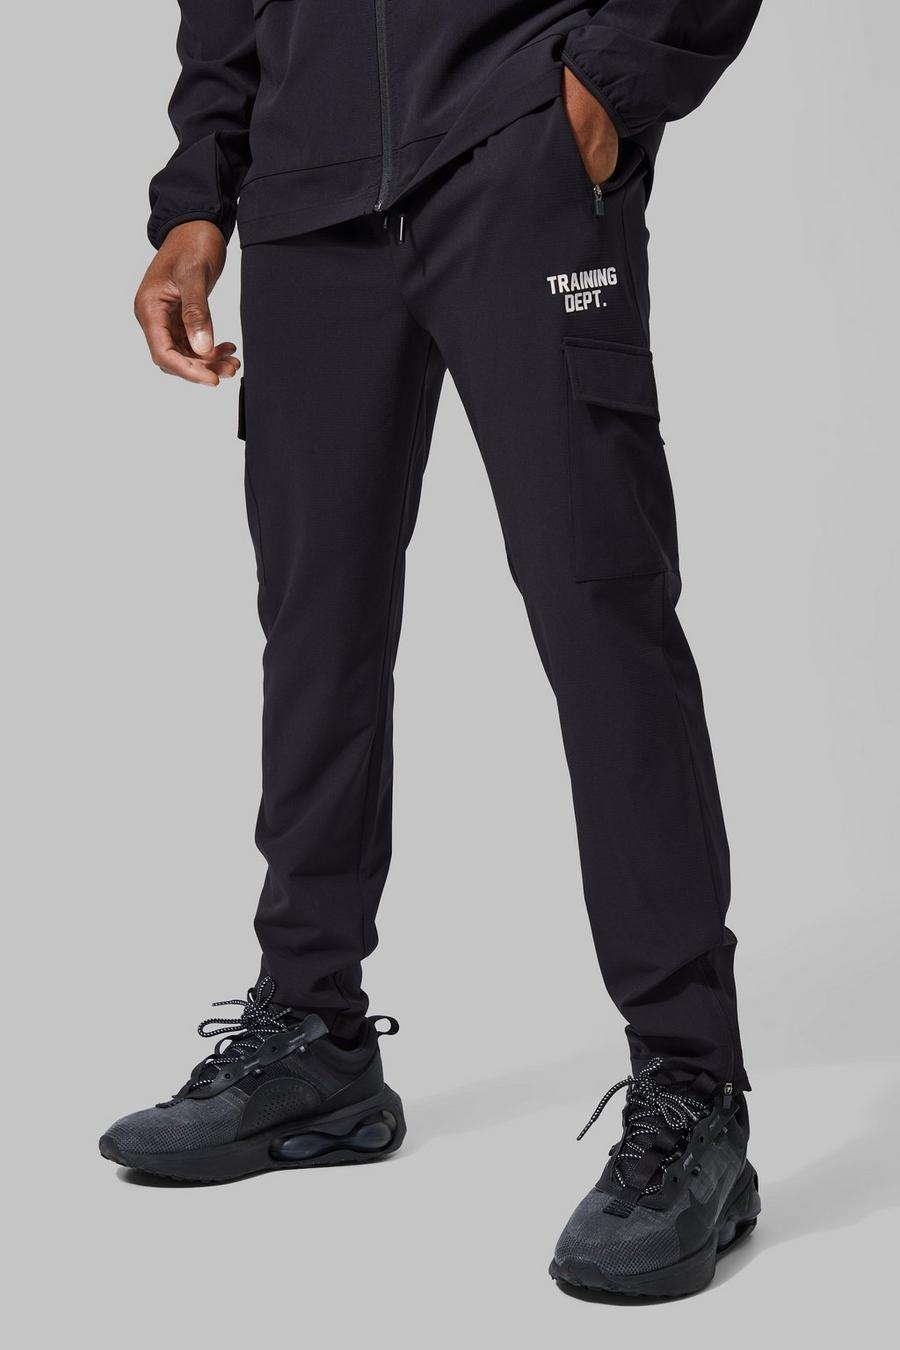 Pantalón deportivo Active cargo ajustado, Black image number 1